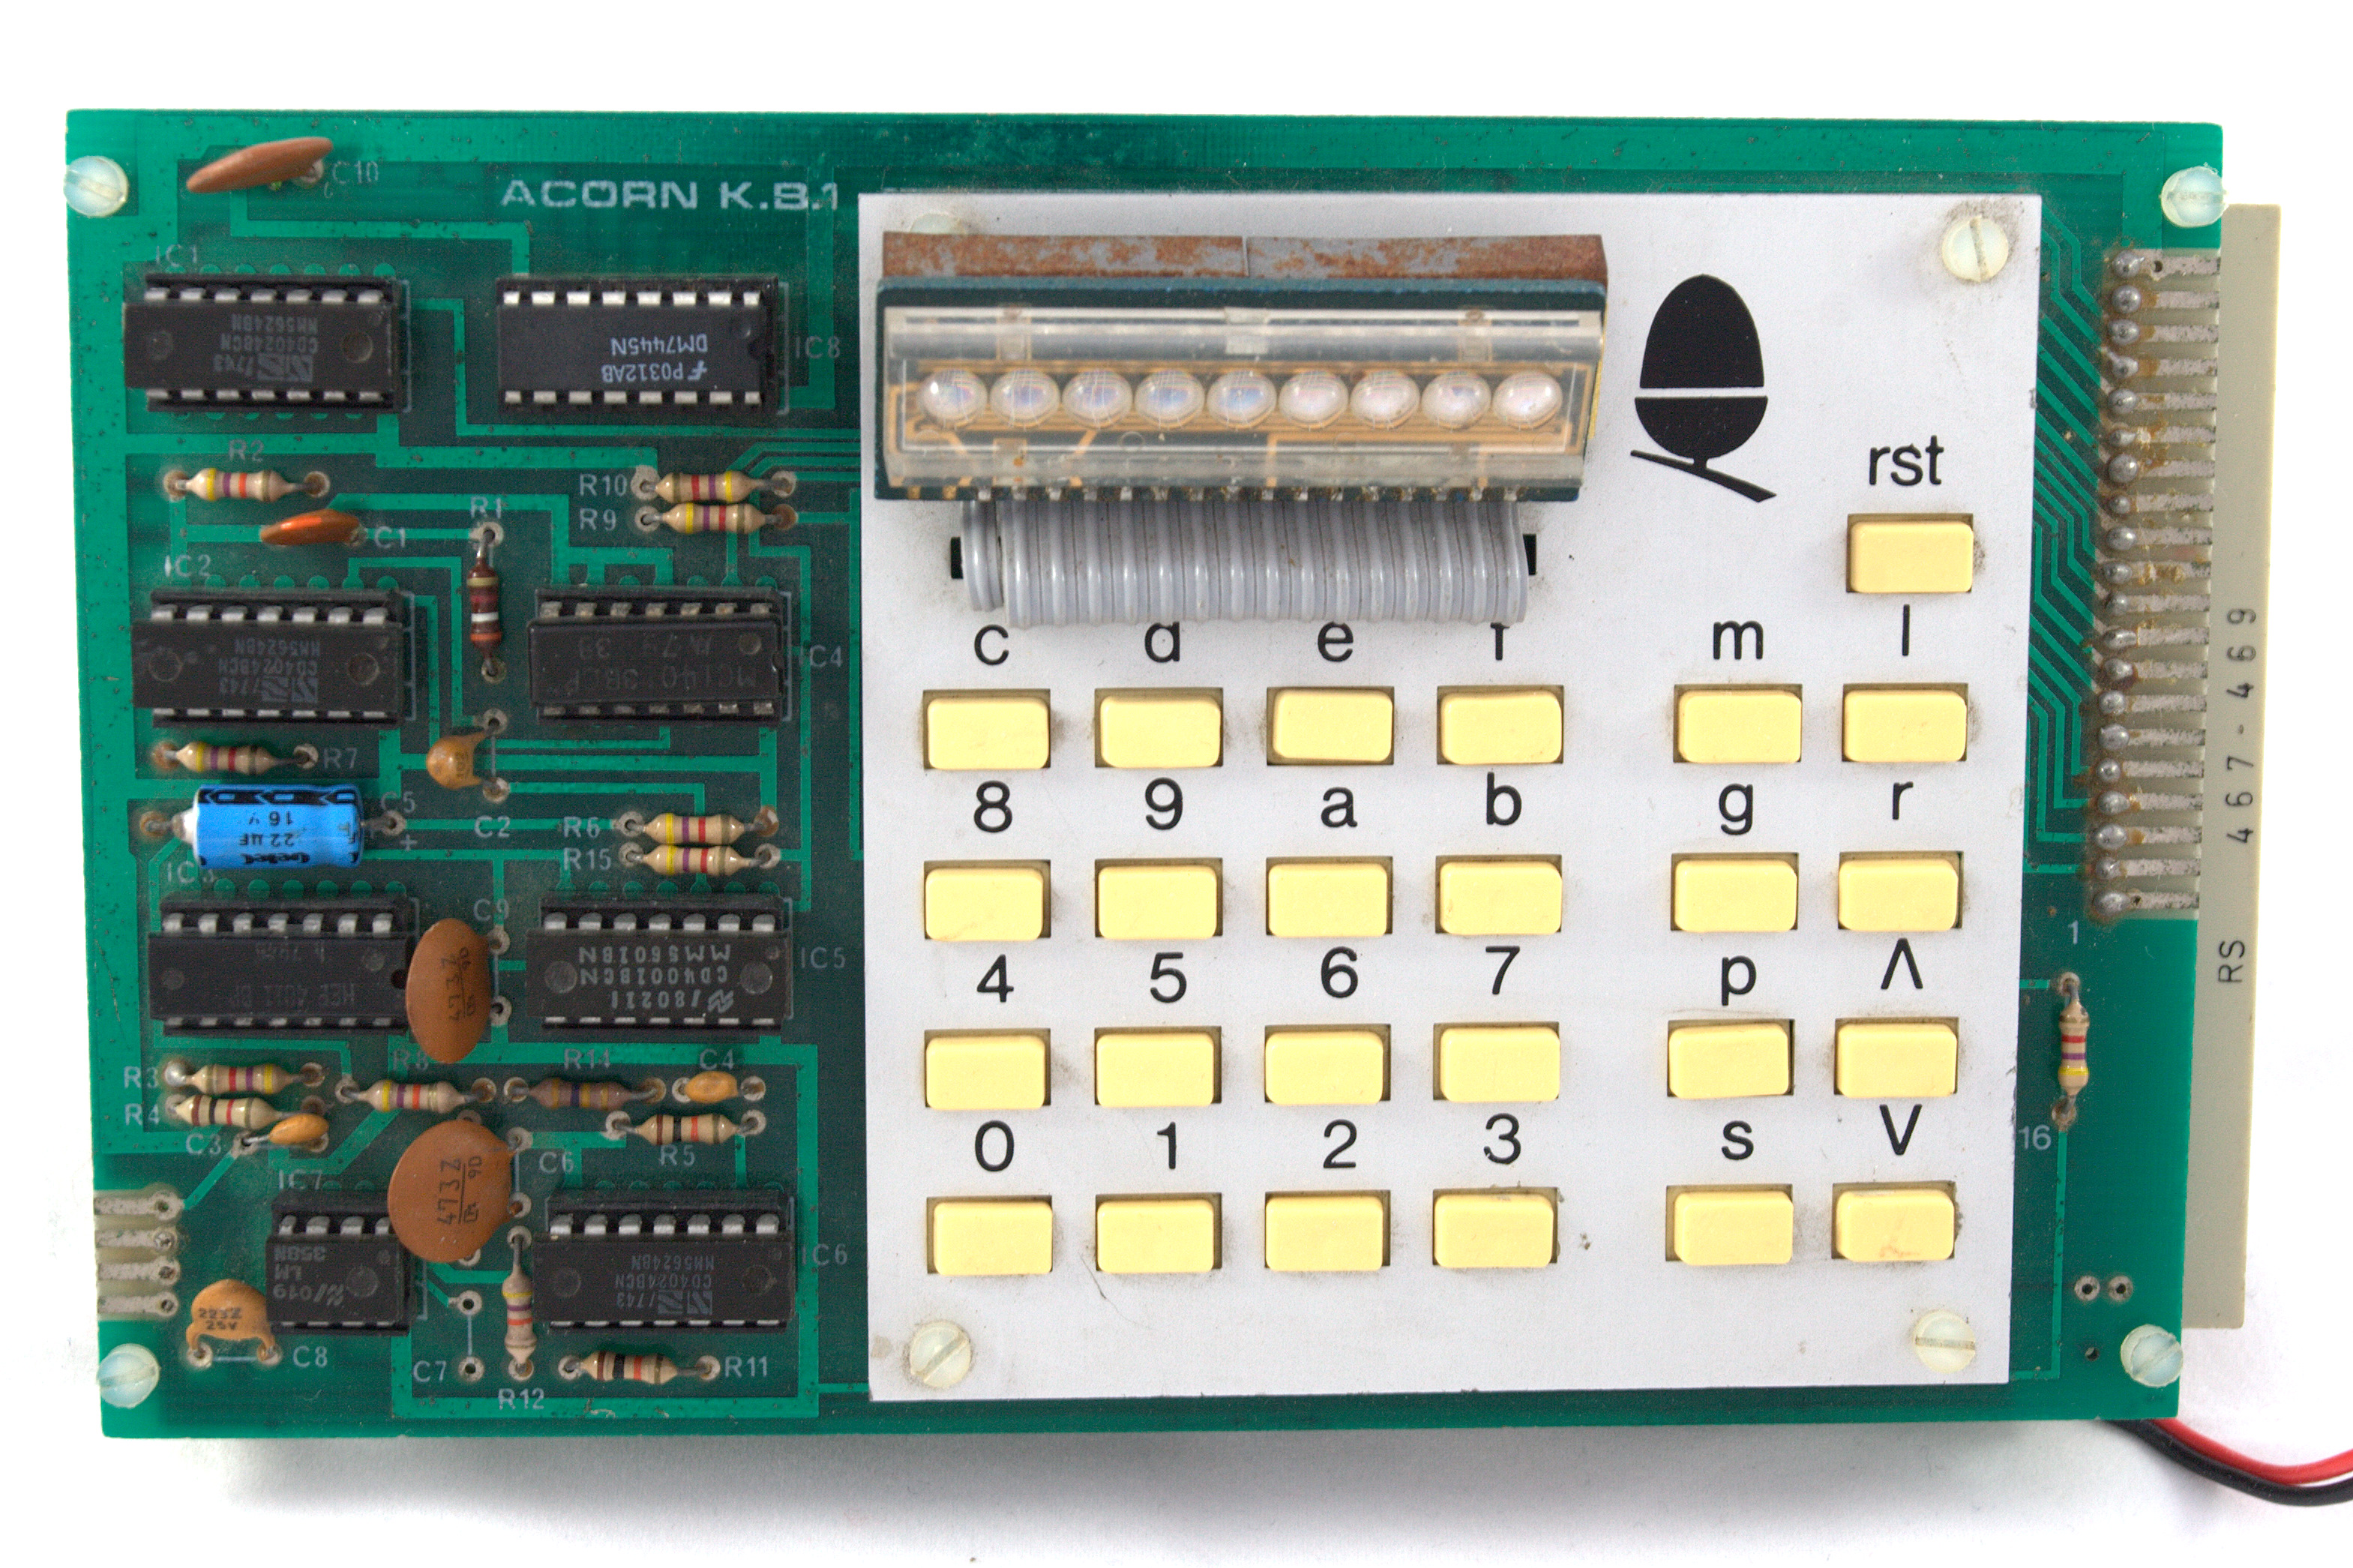 Placa superior del Acorn System 1, con el teclado y display (imagen de Wikipedia con licencia CC BY-SA)